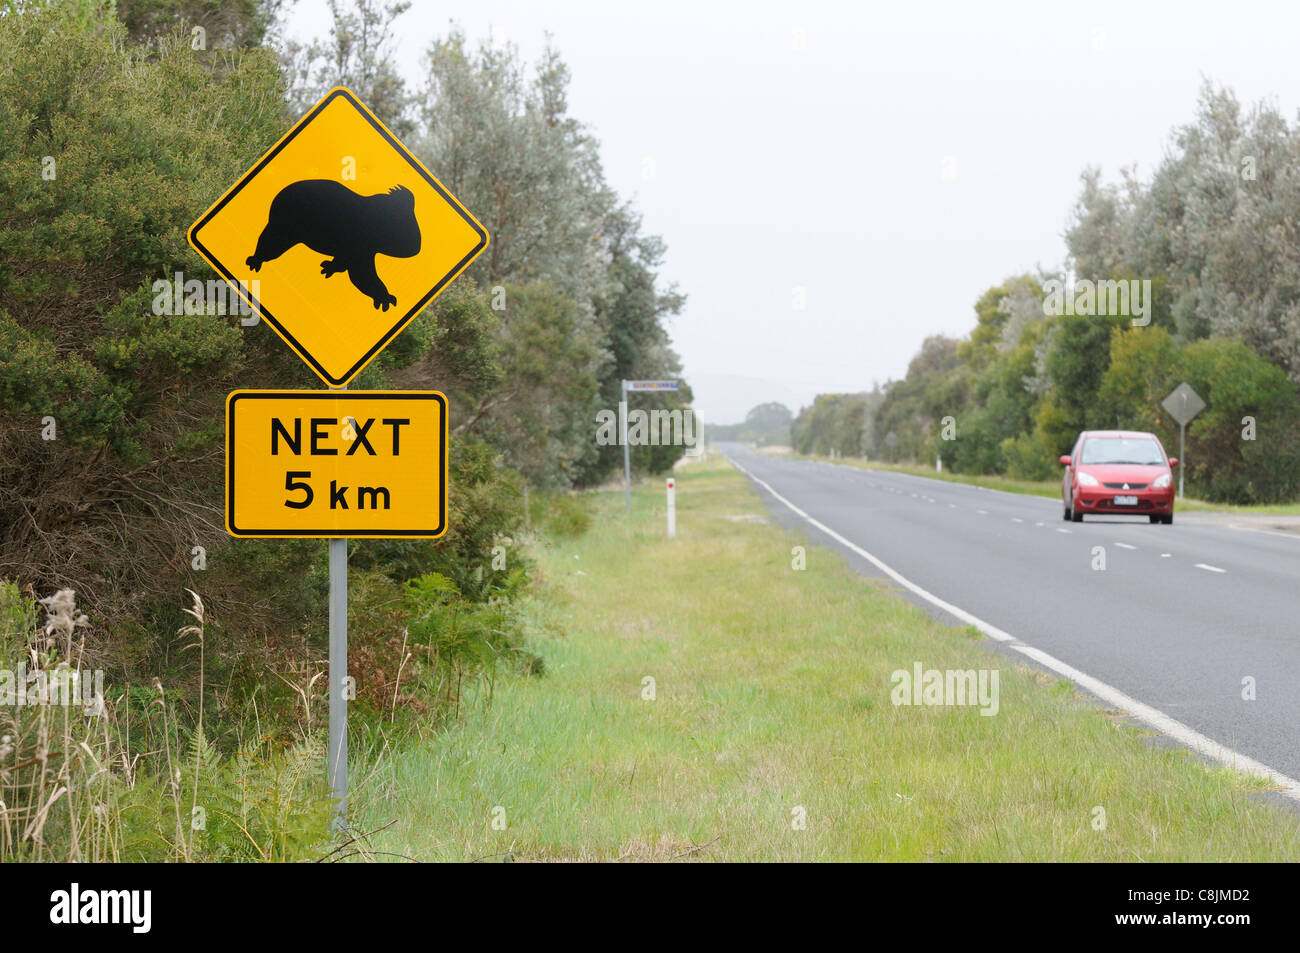 Des panneaux routiers de Koala photographié dans le sud de l'Australie Banque D'Images